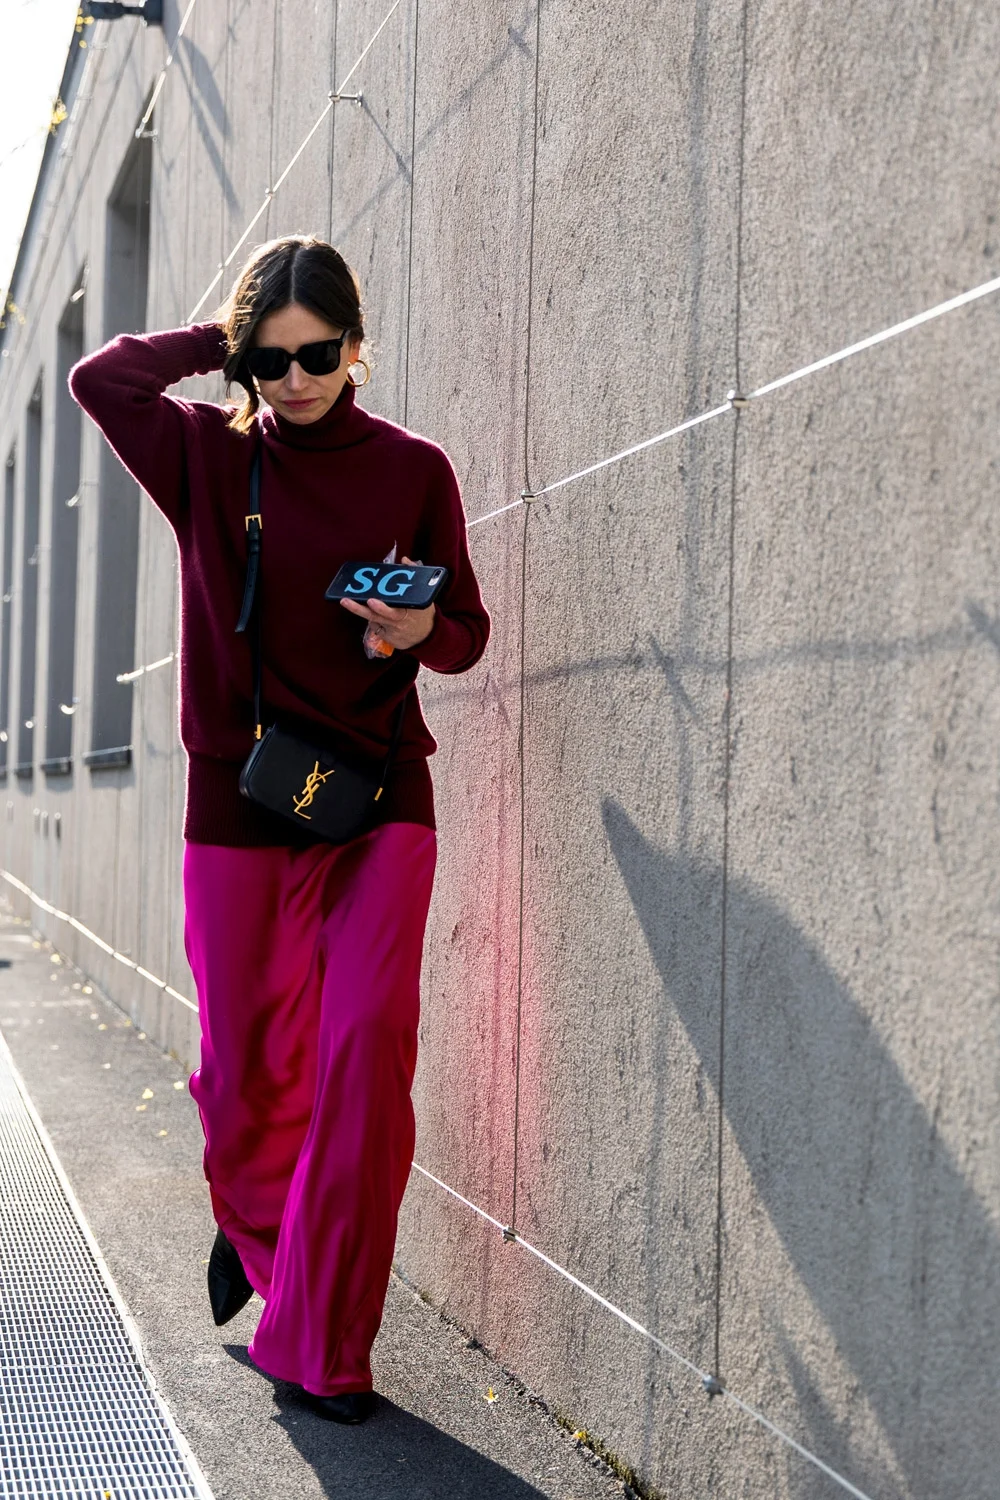 Милан в тренде: как одеваются звезды street style на модные показы - фото 371401